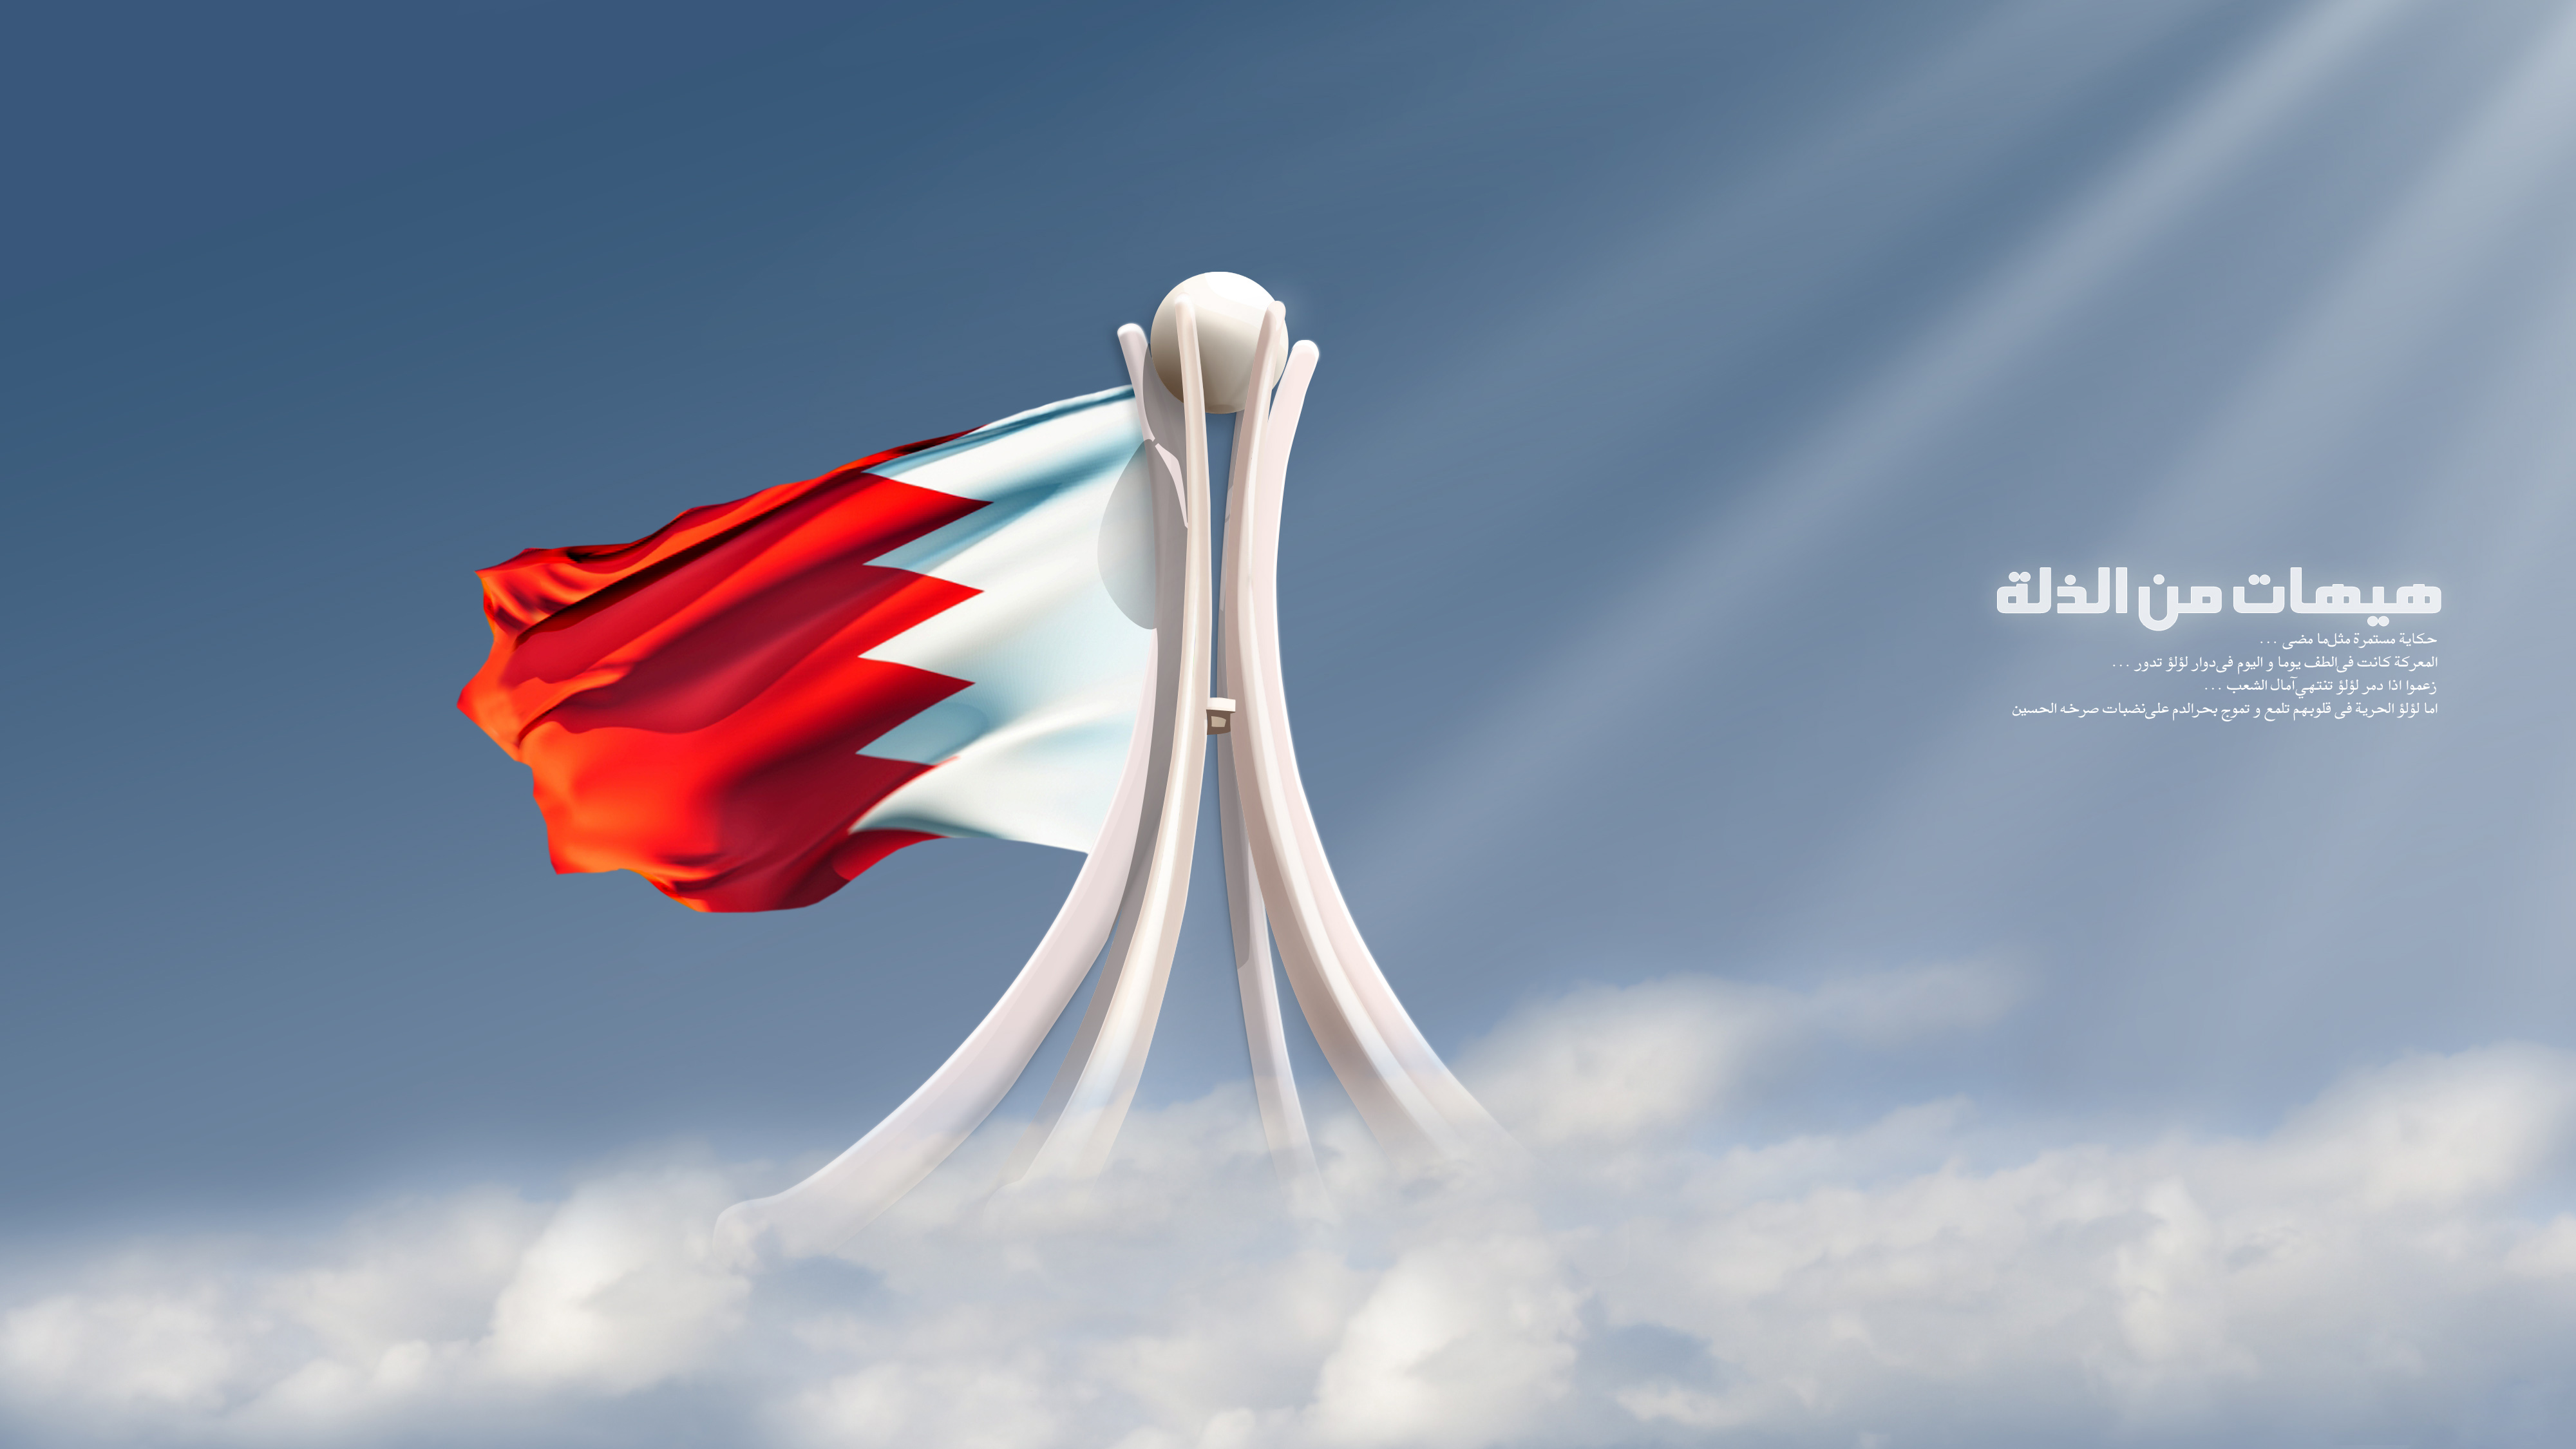  ساختار سیاسی بحرین در سایه استبداد آل خلیفه